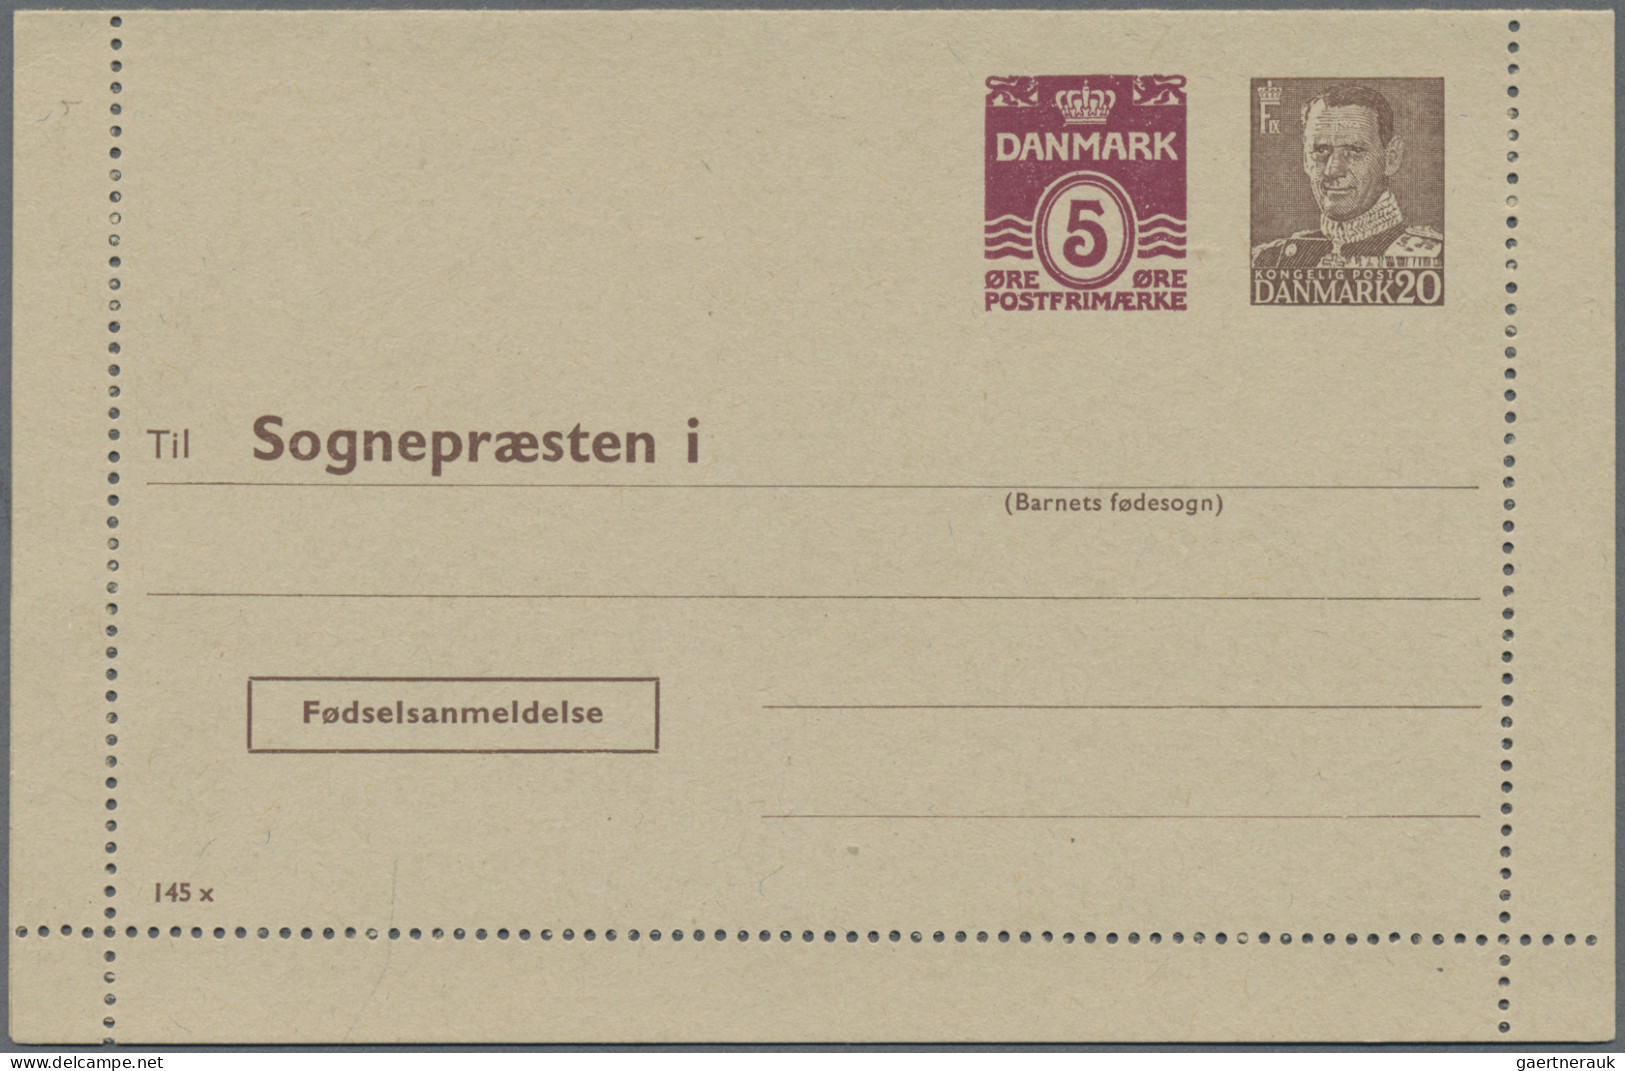 Denmark - Postal Stationery: 1953/1965, Letter Cards For Population Register, Lo - Postwaardestukken